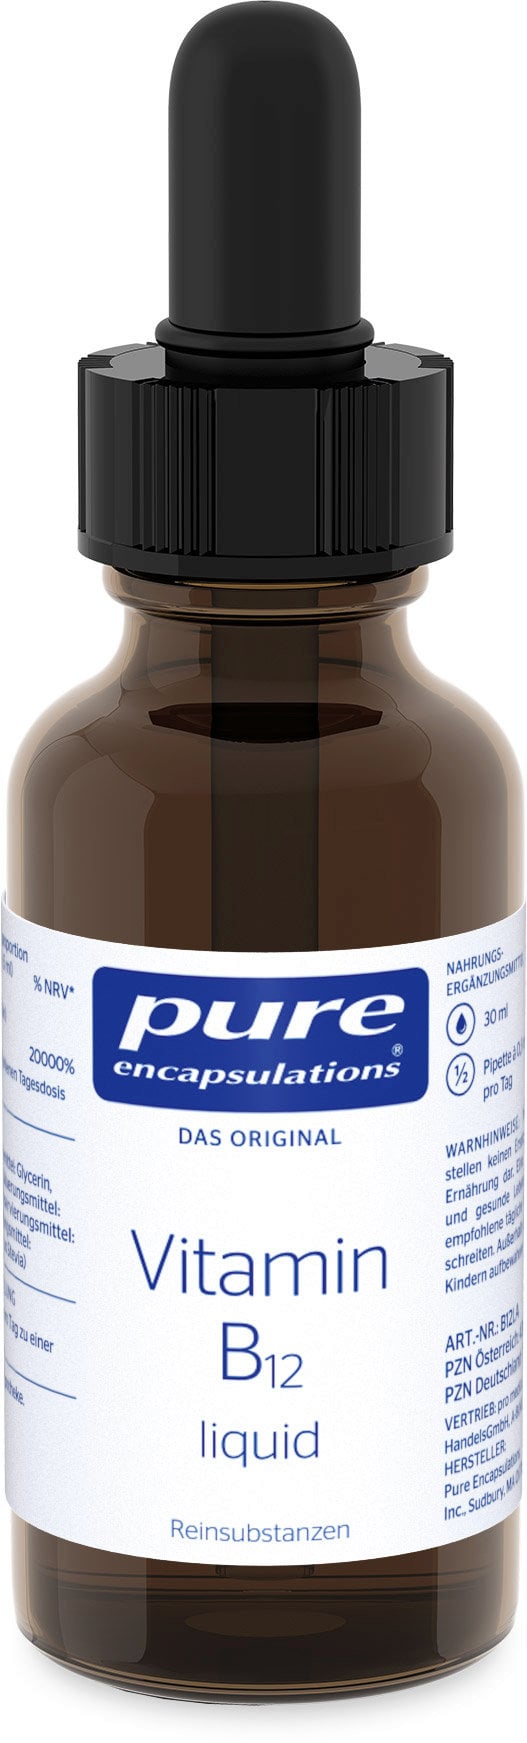 pure encapsulations Vitamin B12 liquid